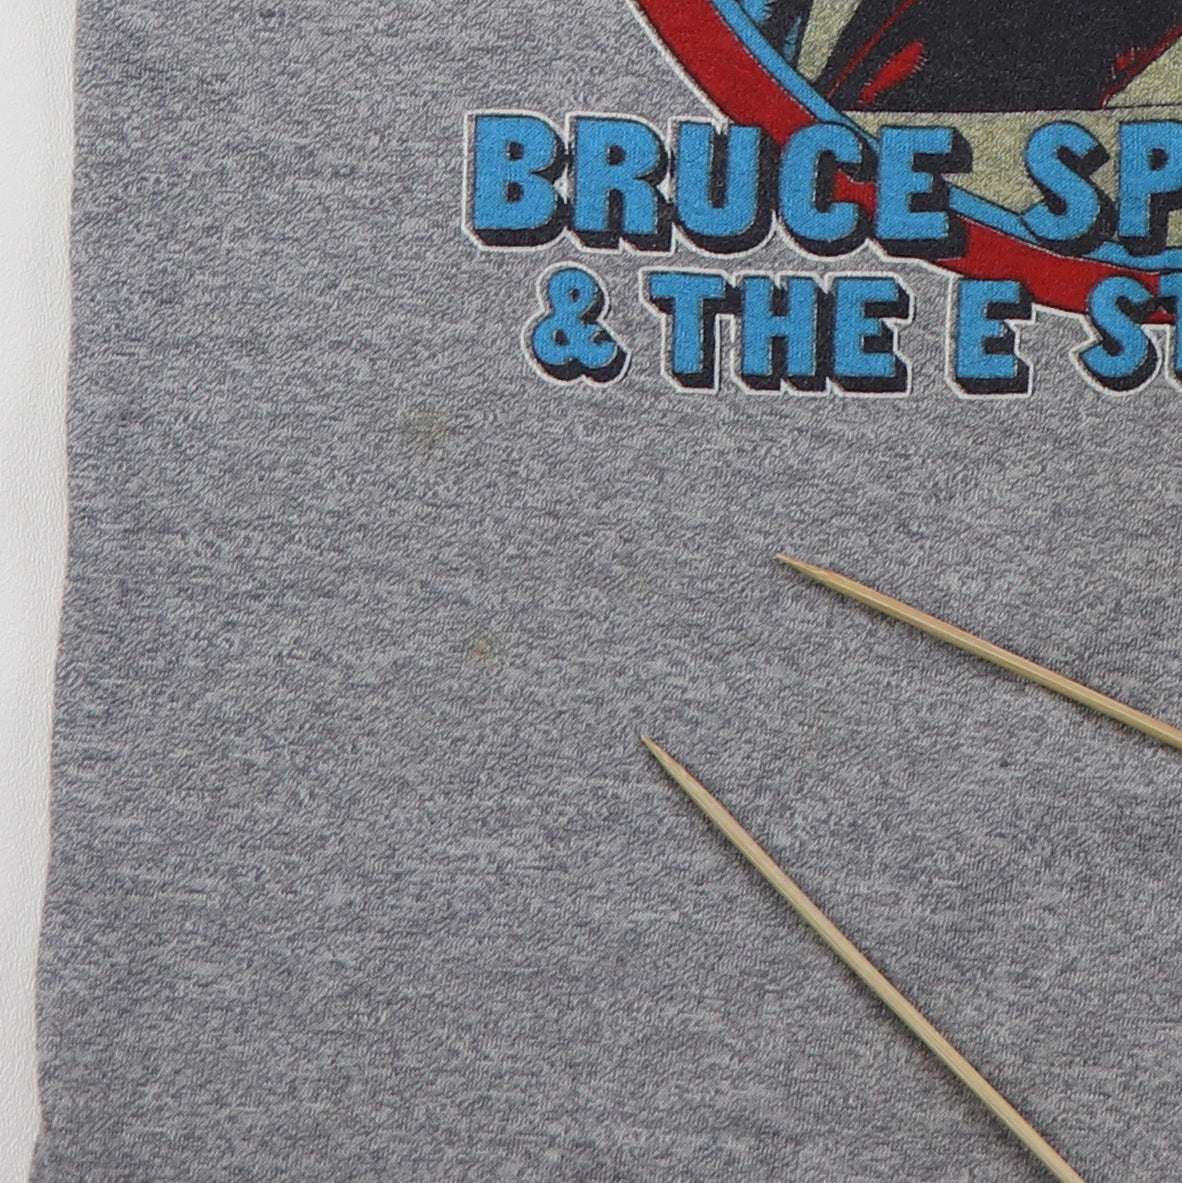 1980 Bruce Springsteen & The E Street Band World Tour Jersey Shirt